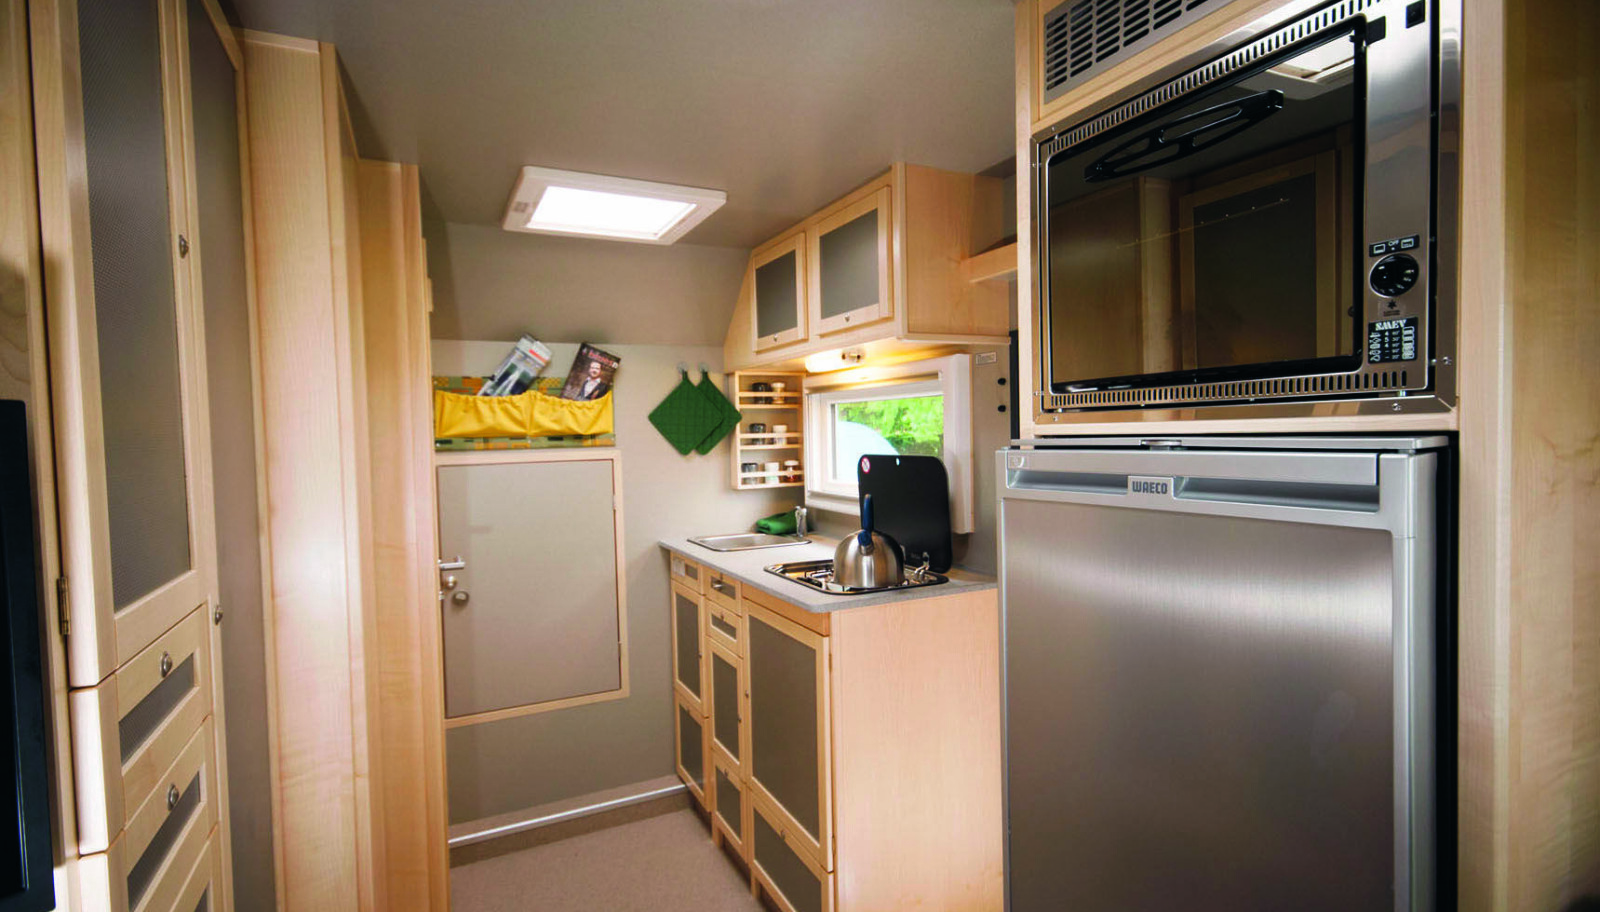 LUKSUS: Kjøkken med arbeidsplate i naturstein, 110-liters kjøleskap, fryseboks, og stekeovn.